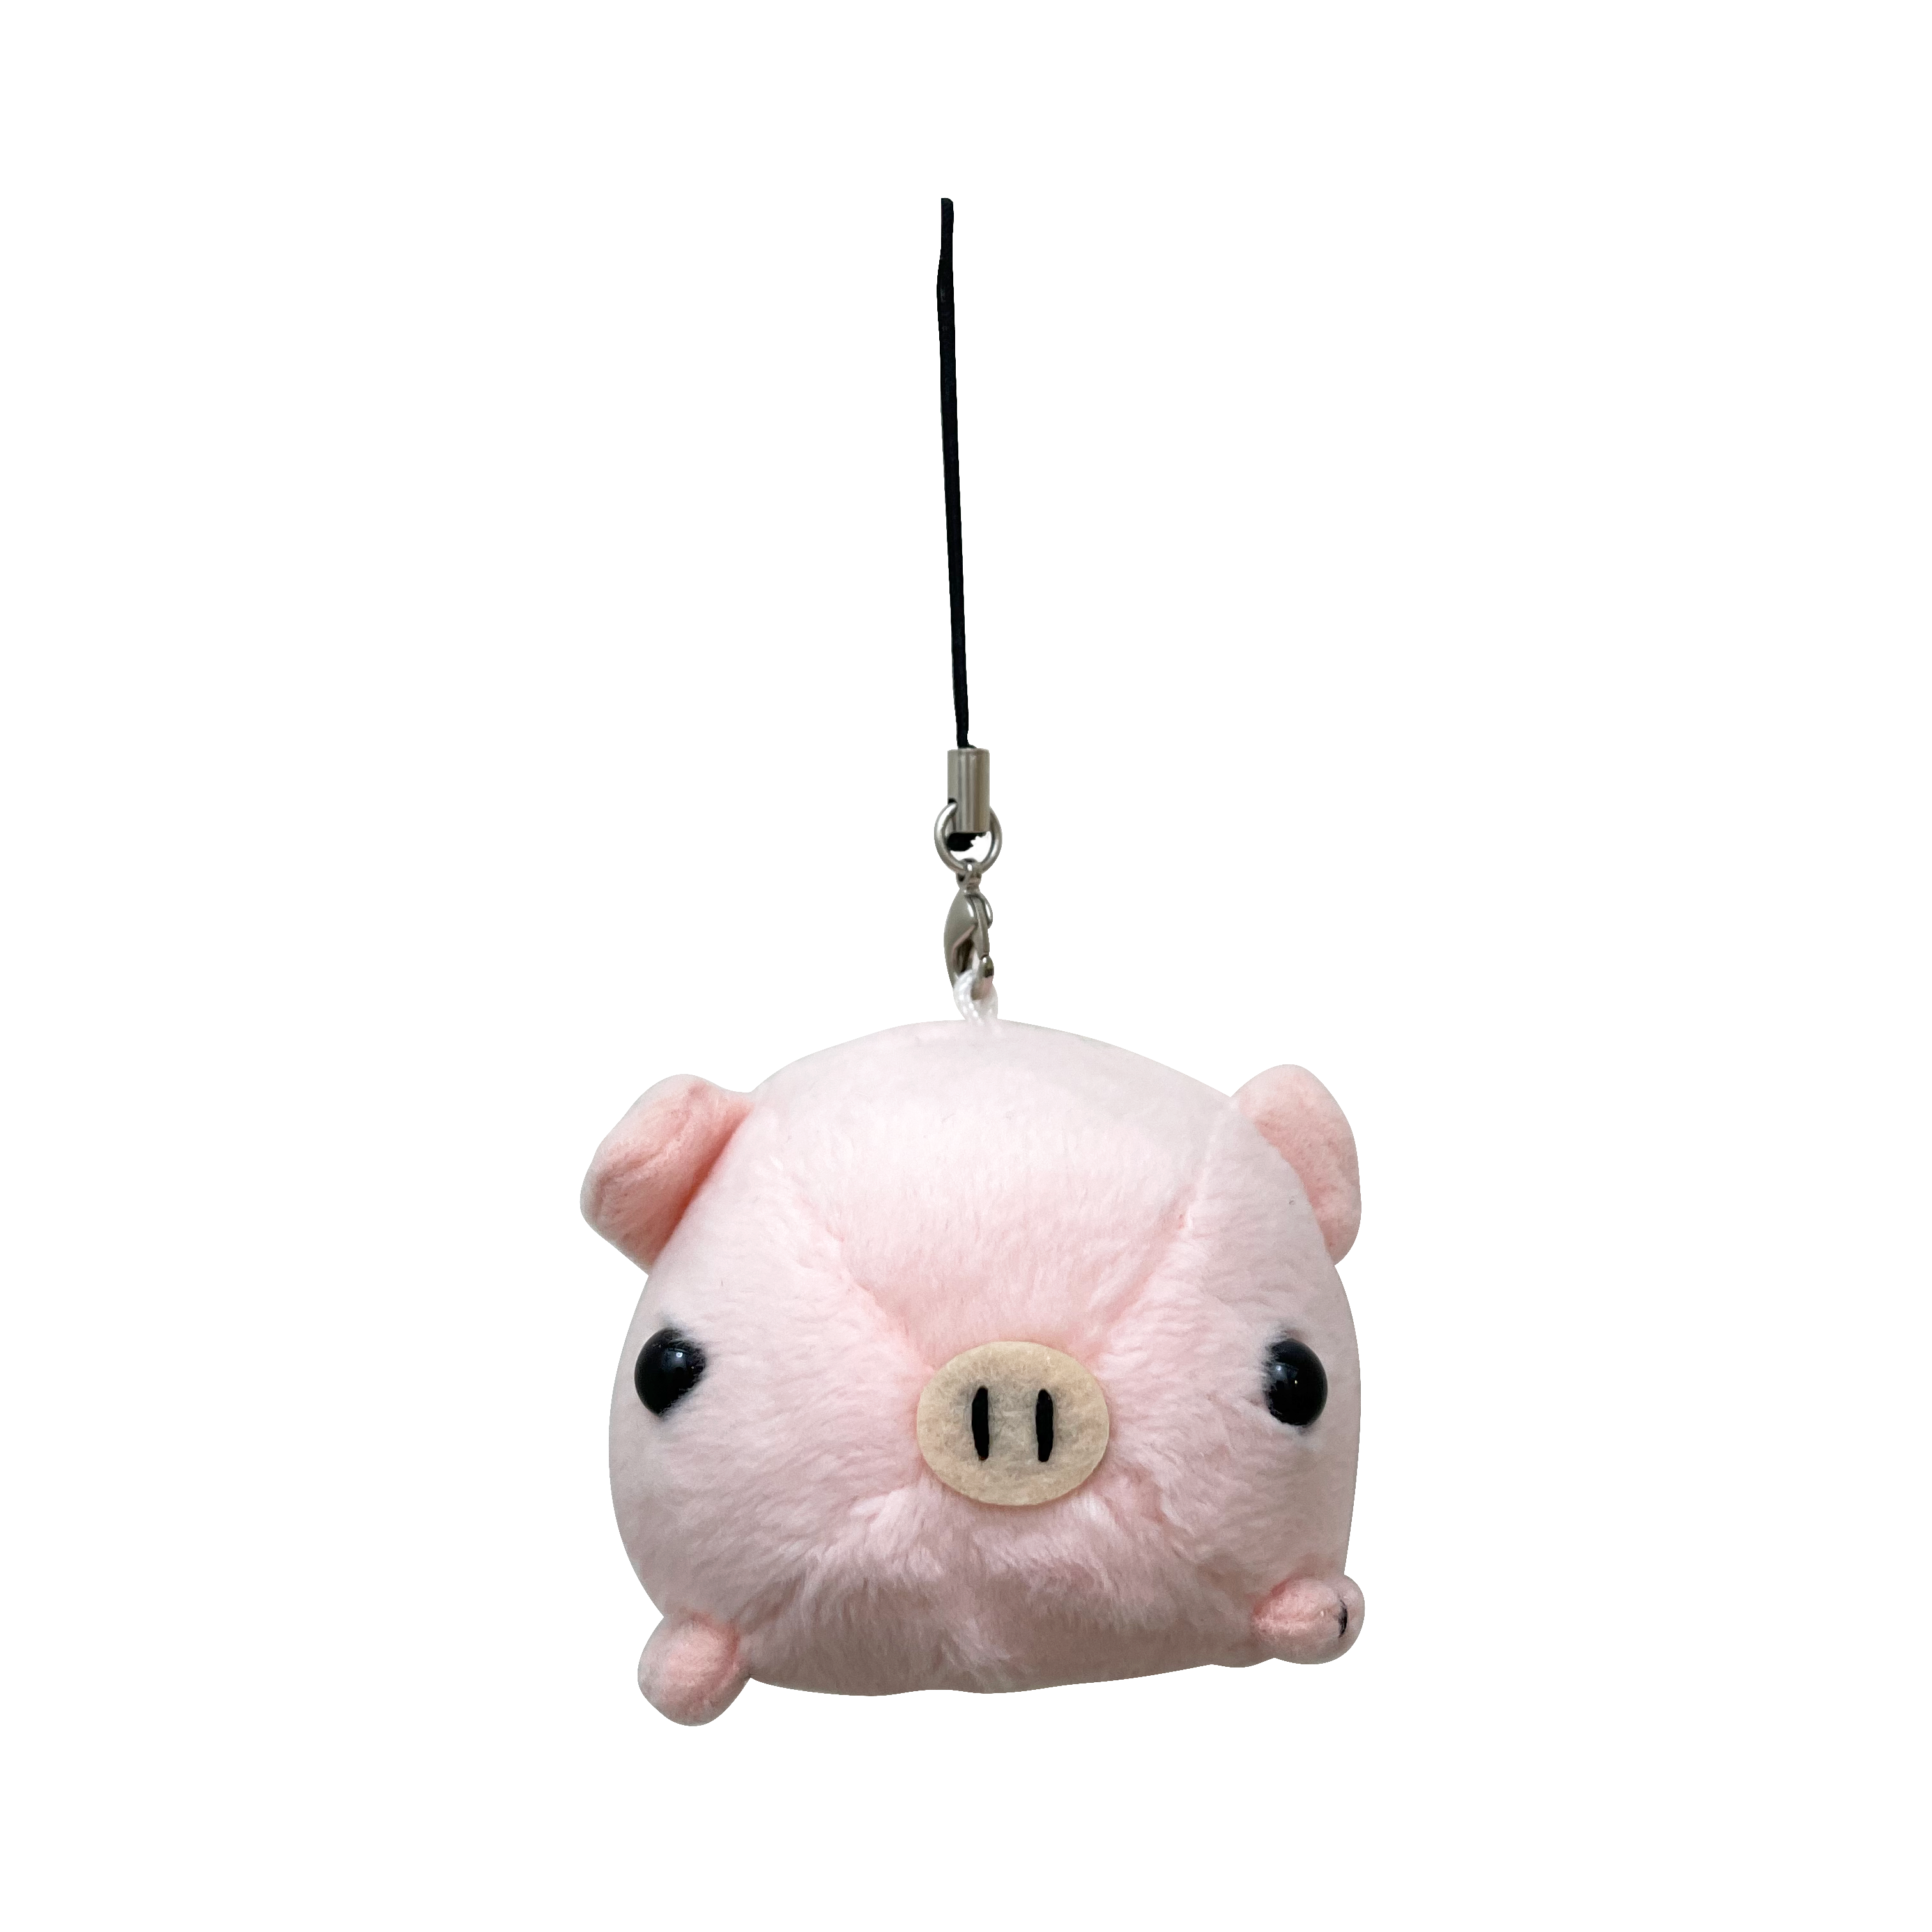 Good BBQ Piggy Keychain